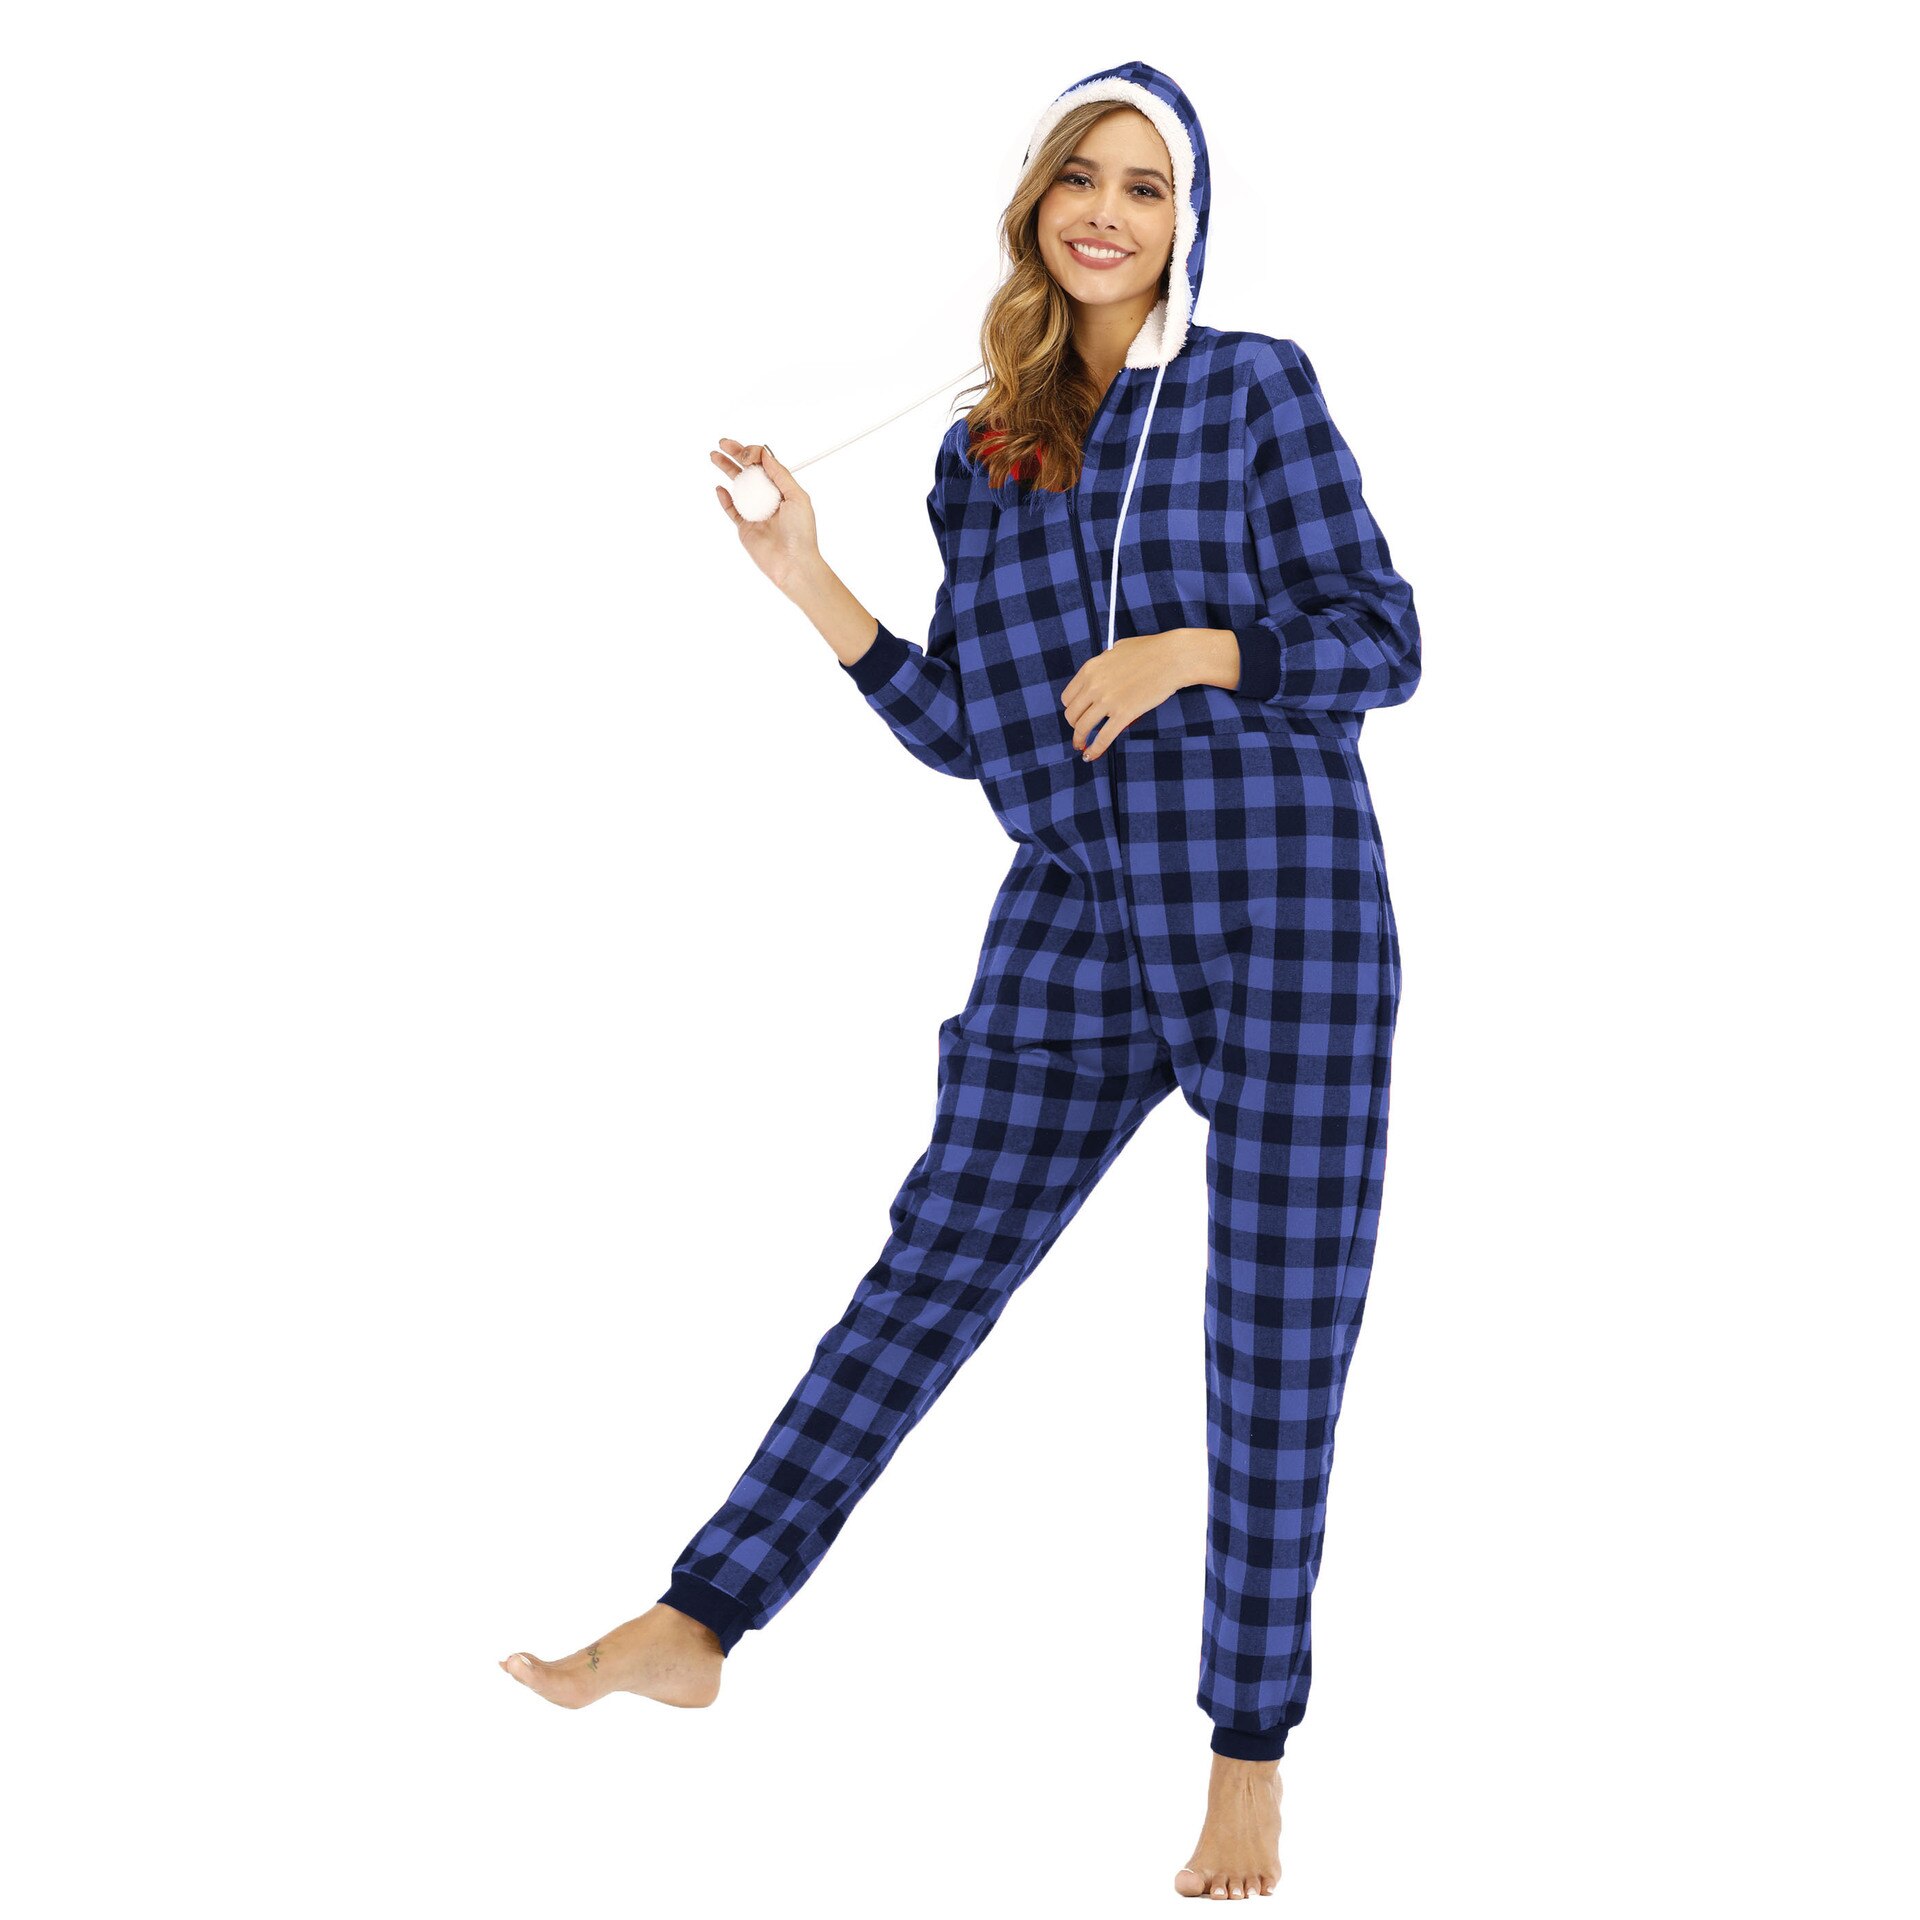 Plaid Print Jumpsuit Winter Adult Women Onesies Pajama Zipper Long Sleeve Casual Homewear Hood Romper Sleepwear Splicing Set